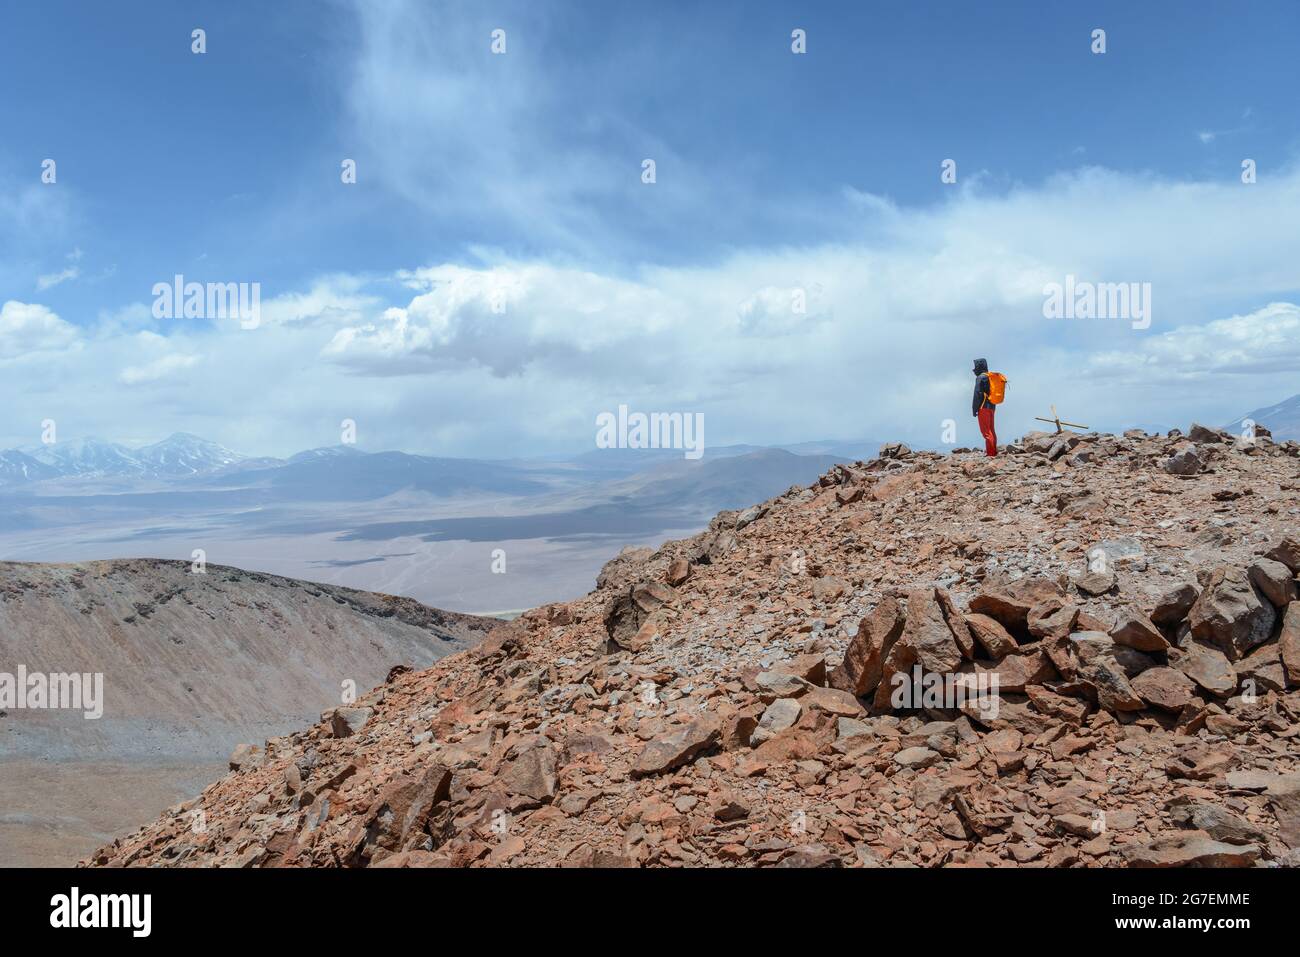 Ein Mann auf dem Gipfel des Vulkans Siete Hermanos, der sich vor einer atemberaubenden Landschaft in der Atacama-Wüste bei Copiapo glücklich fühlt Stockfoto